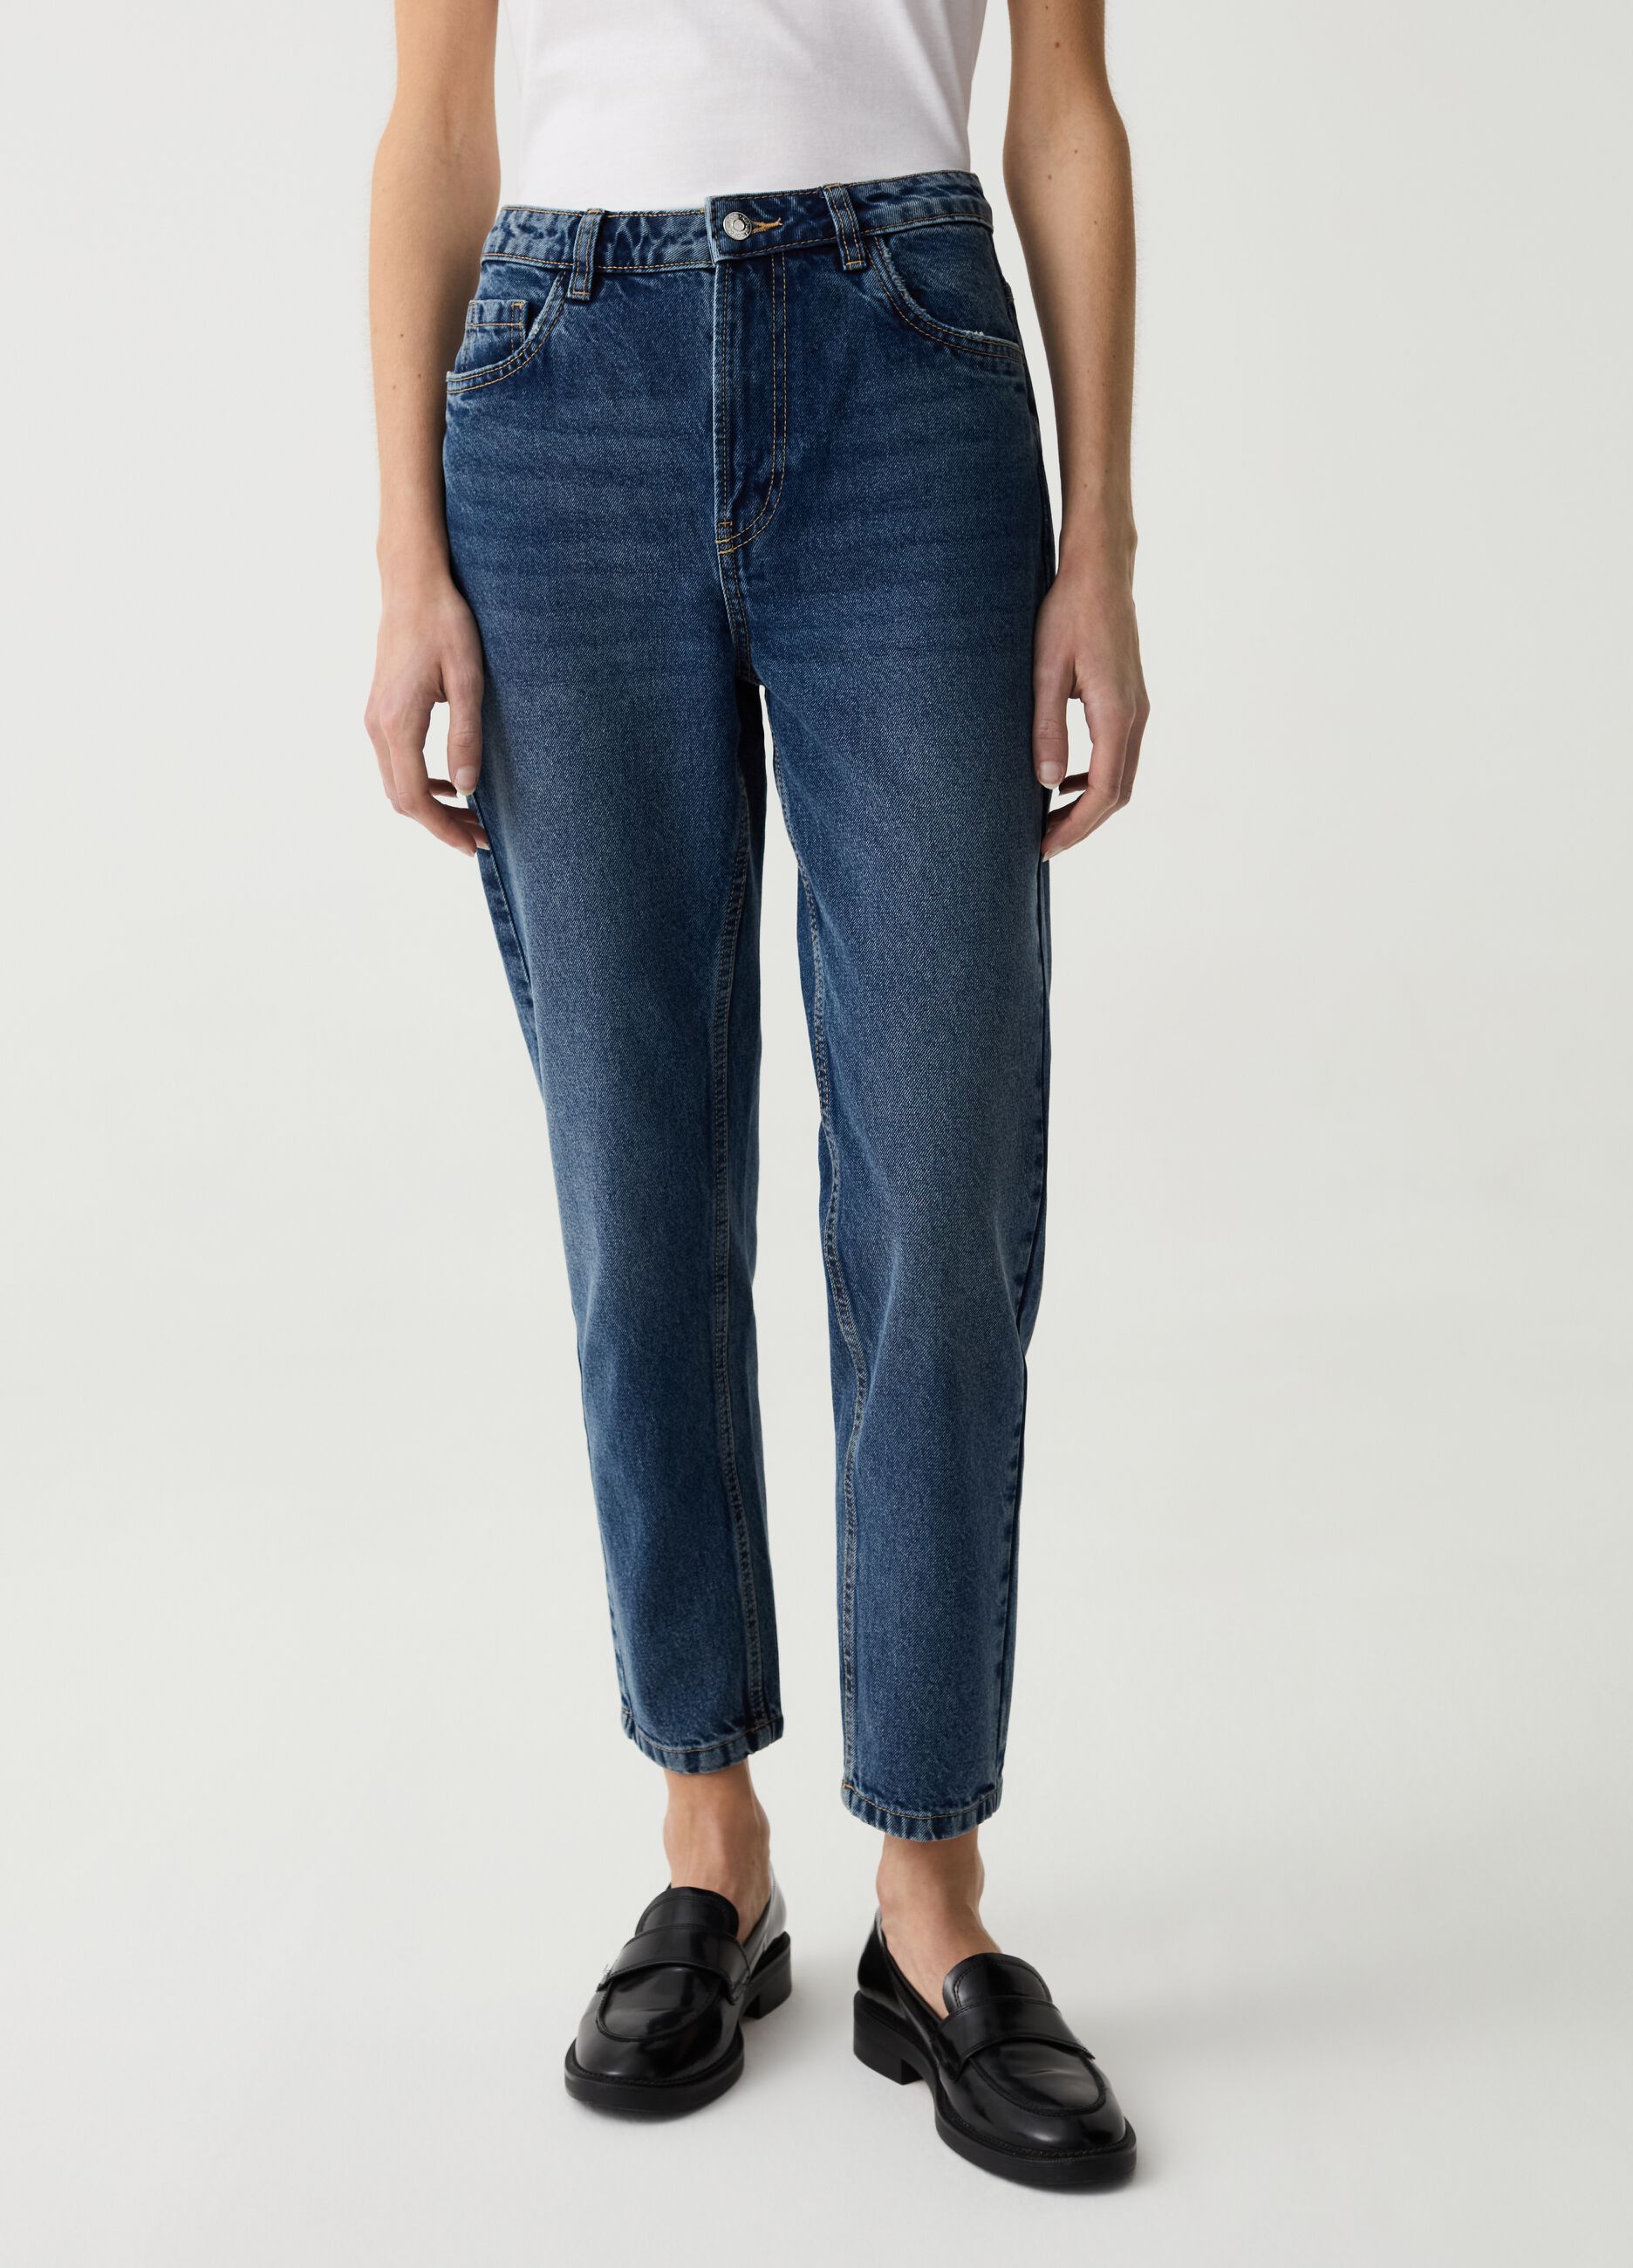 Mum-fit crop jeans